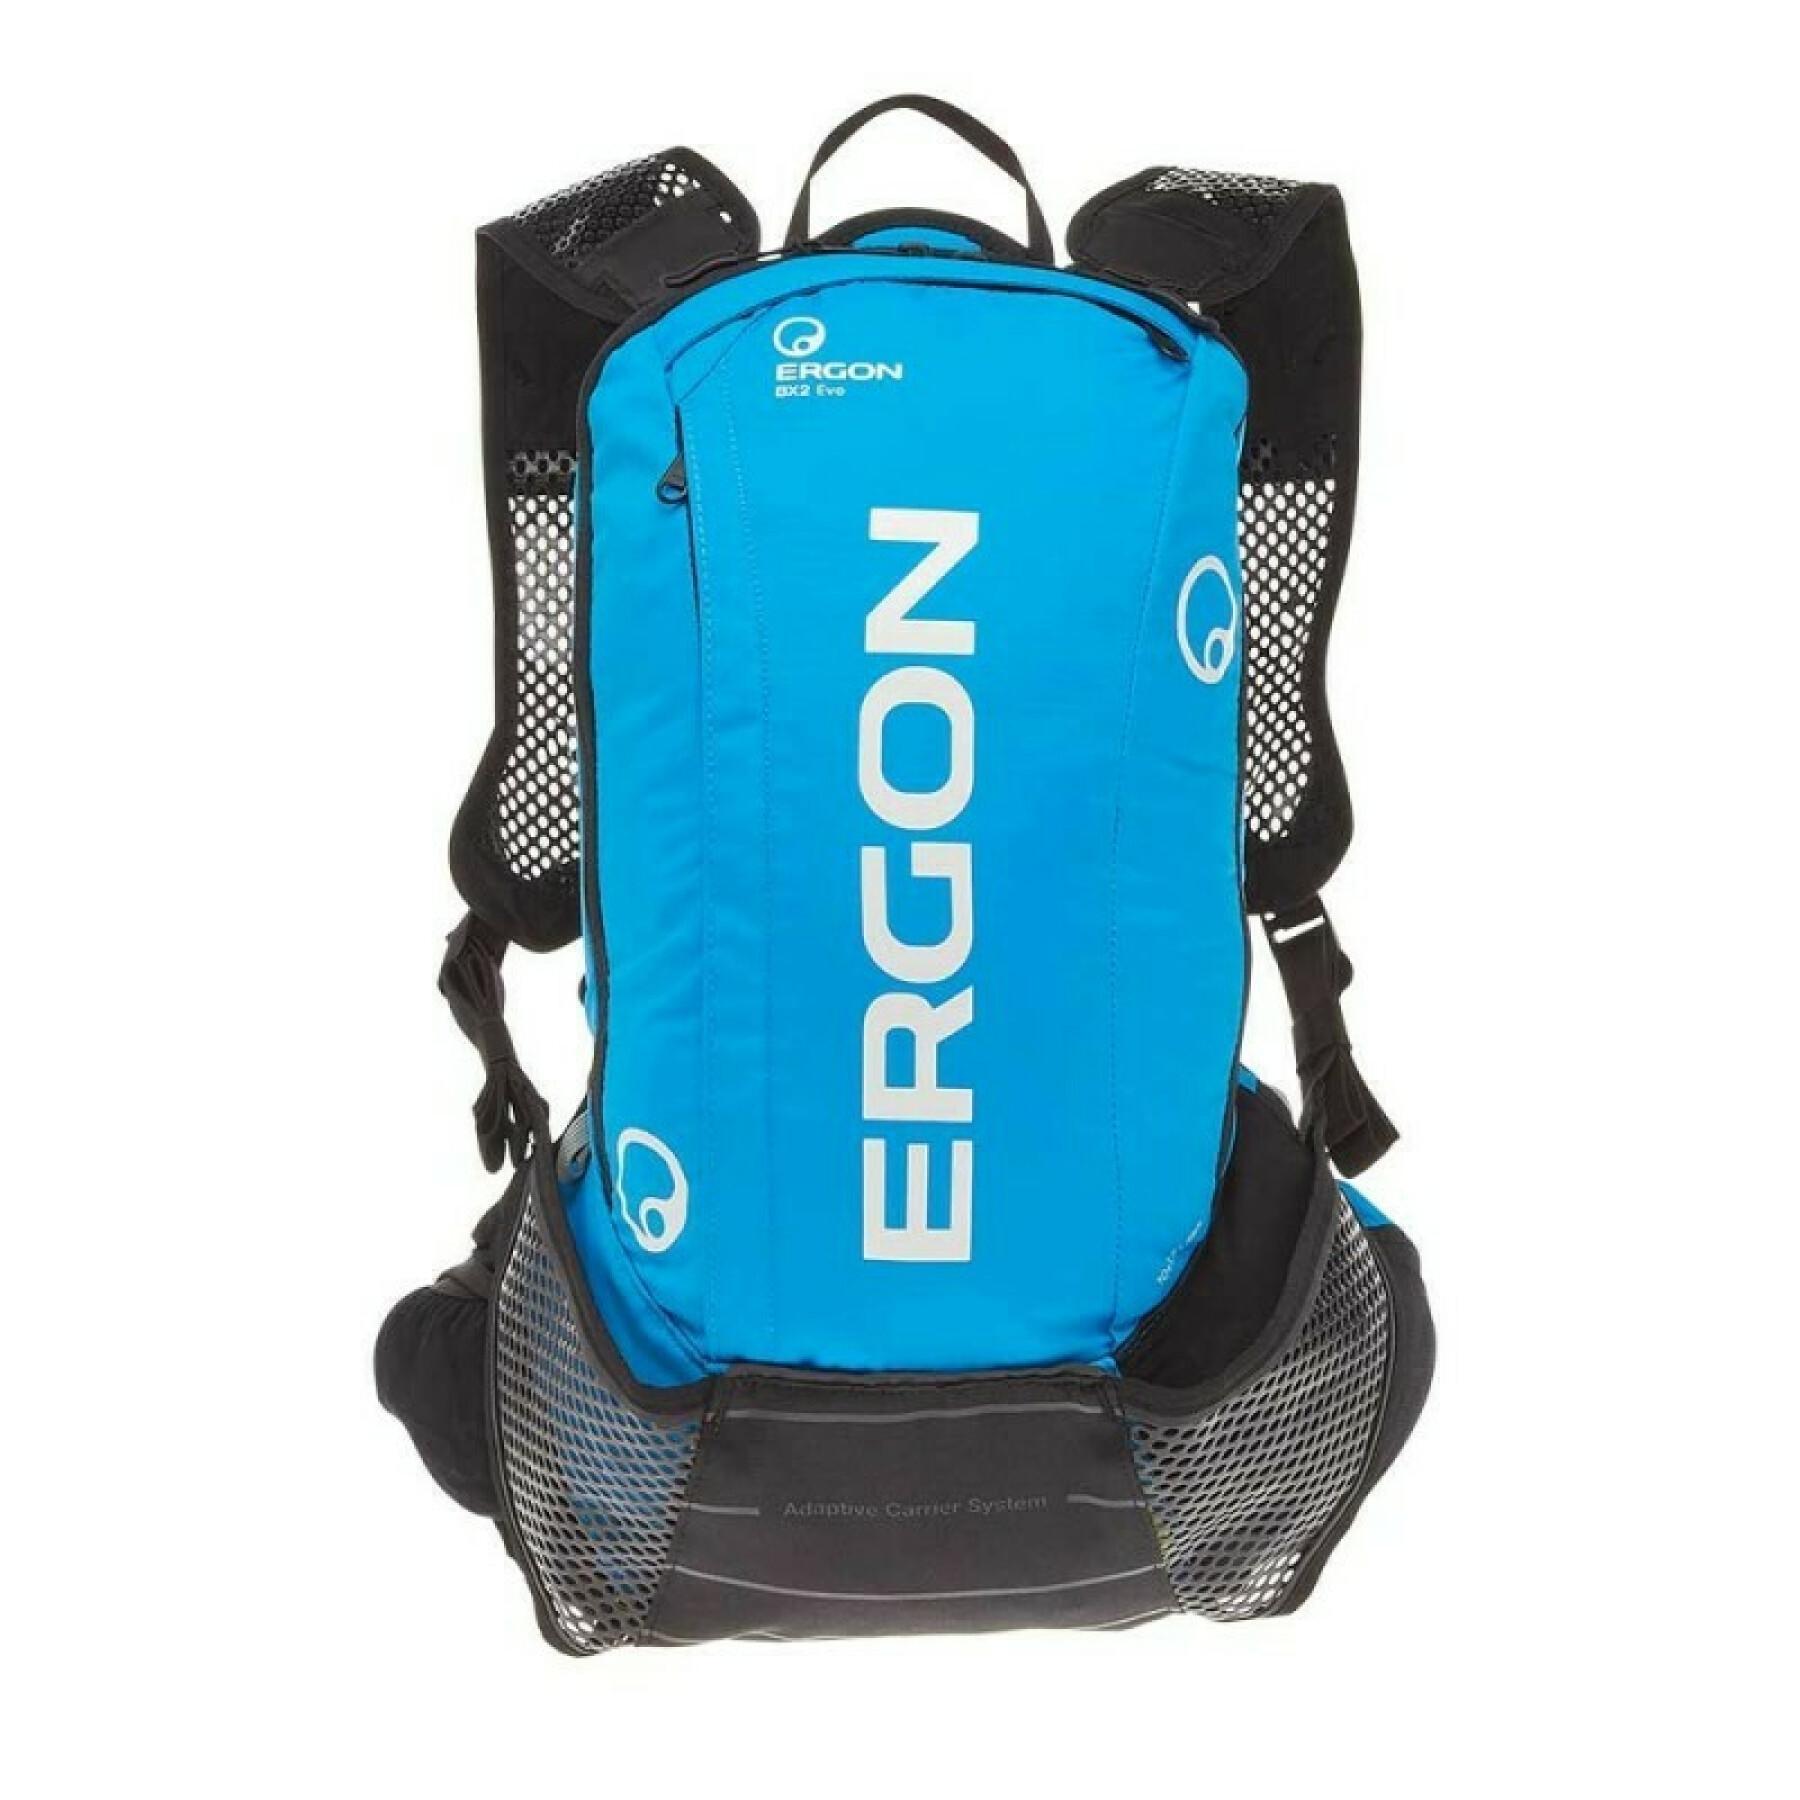 Backpack Ergon bx2 evo